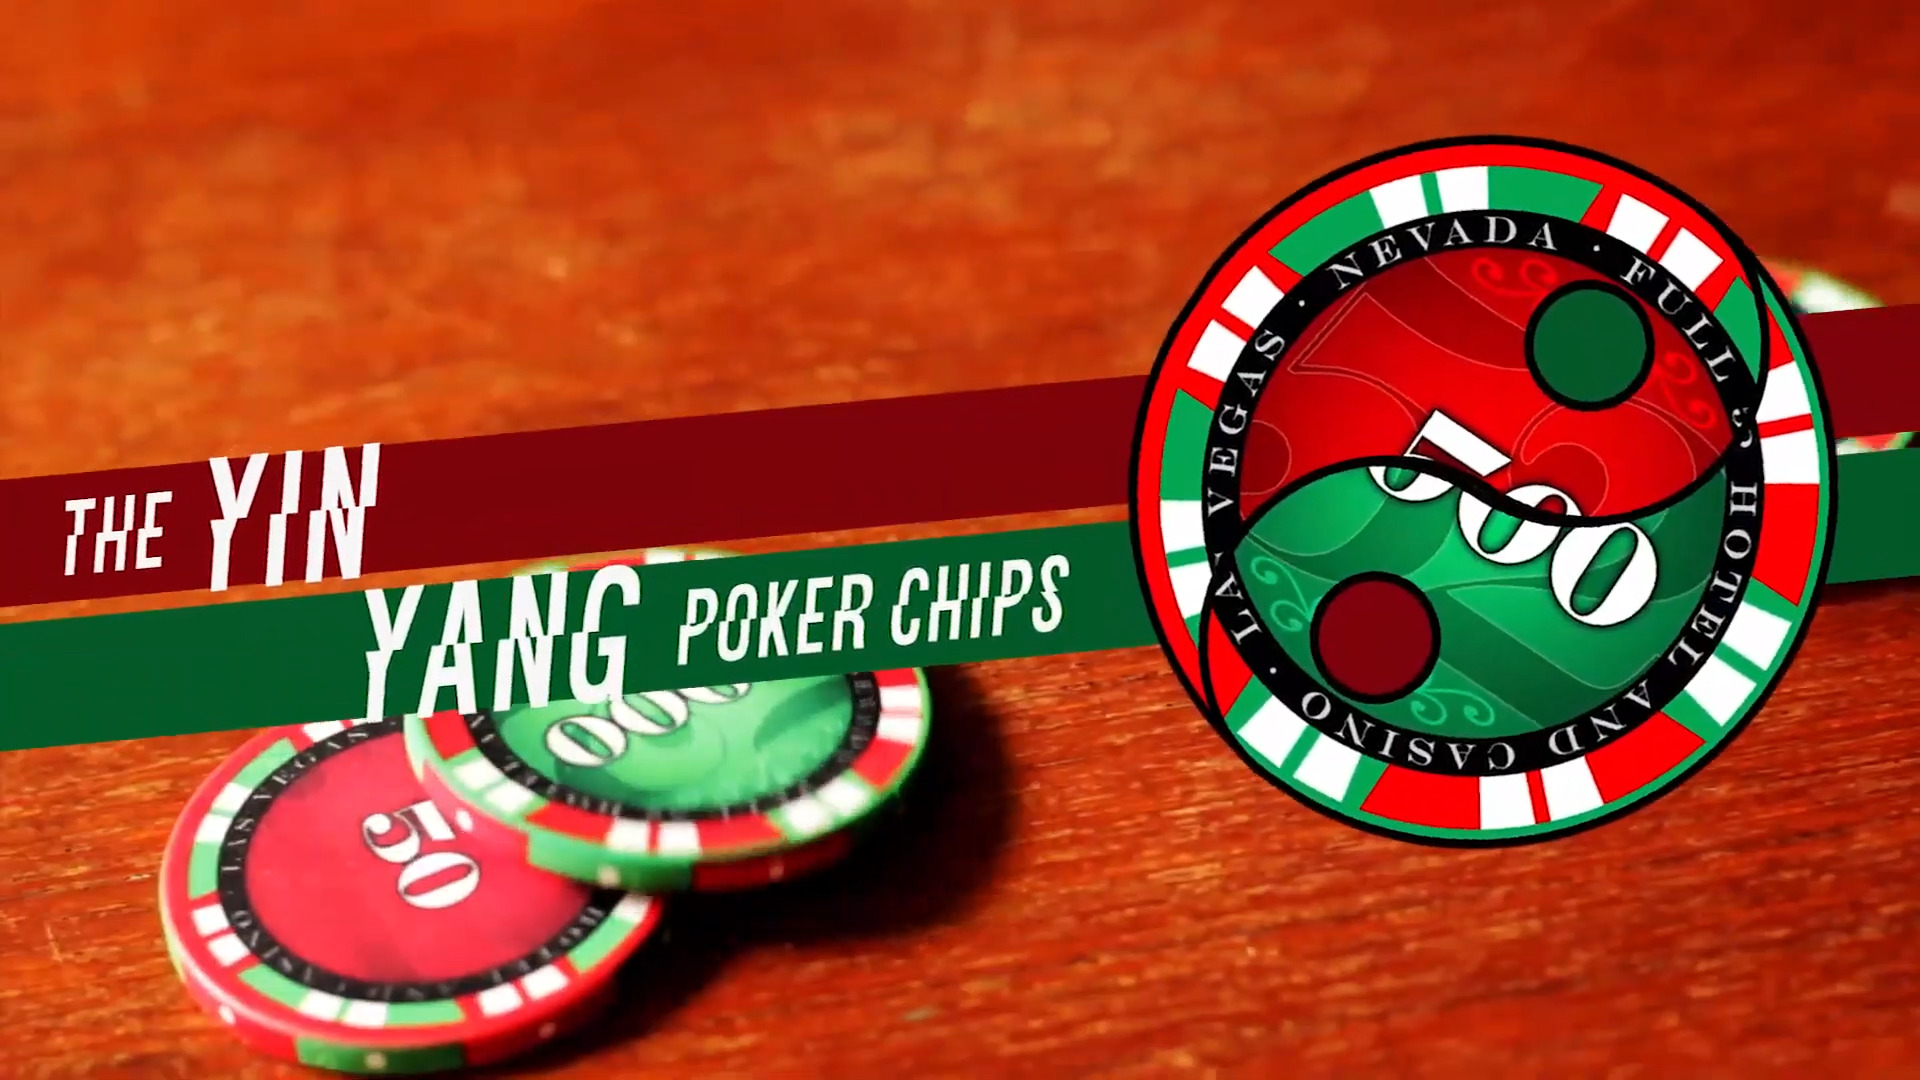 The Yin Yang Poker Chips - Vanishing Inc. Magic shop